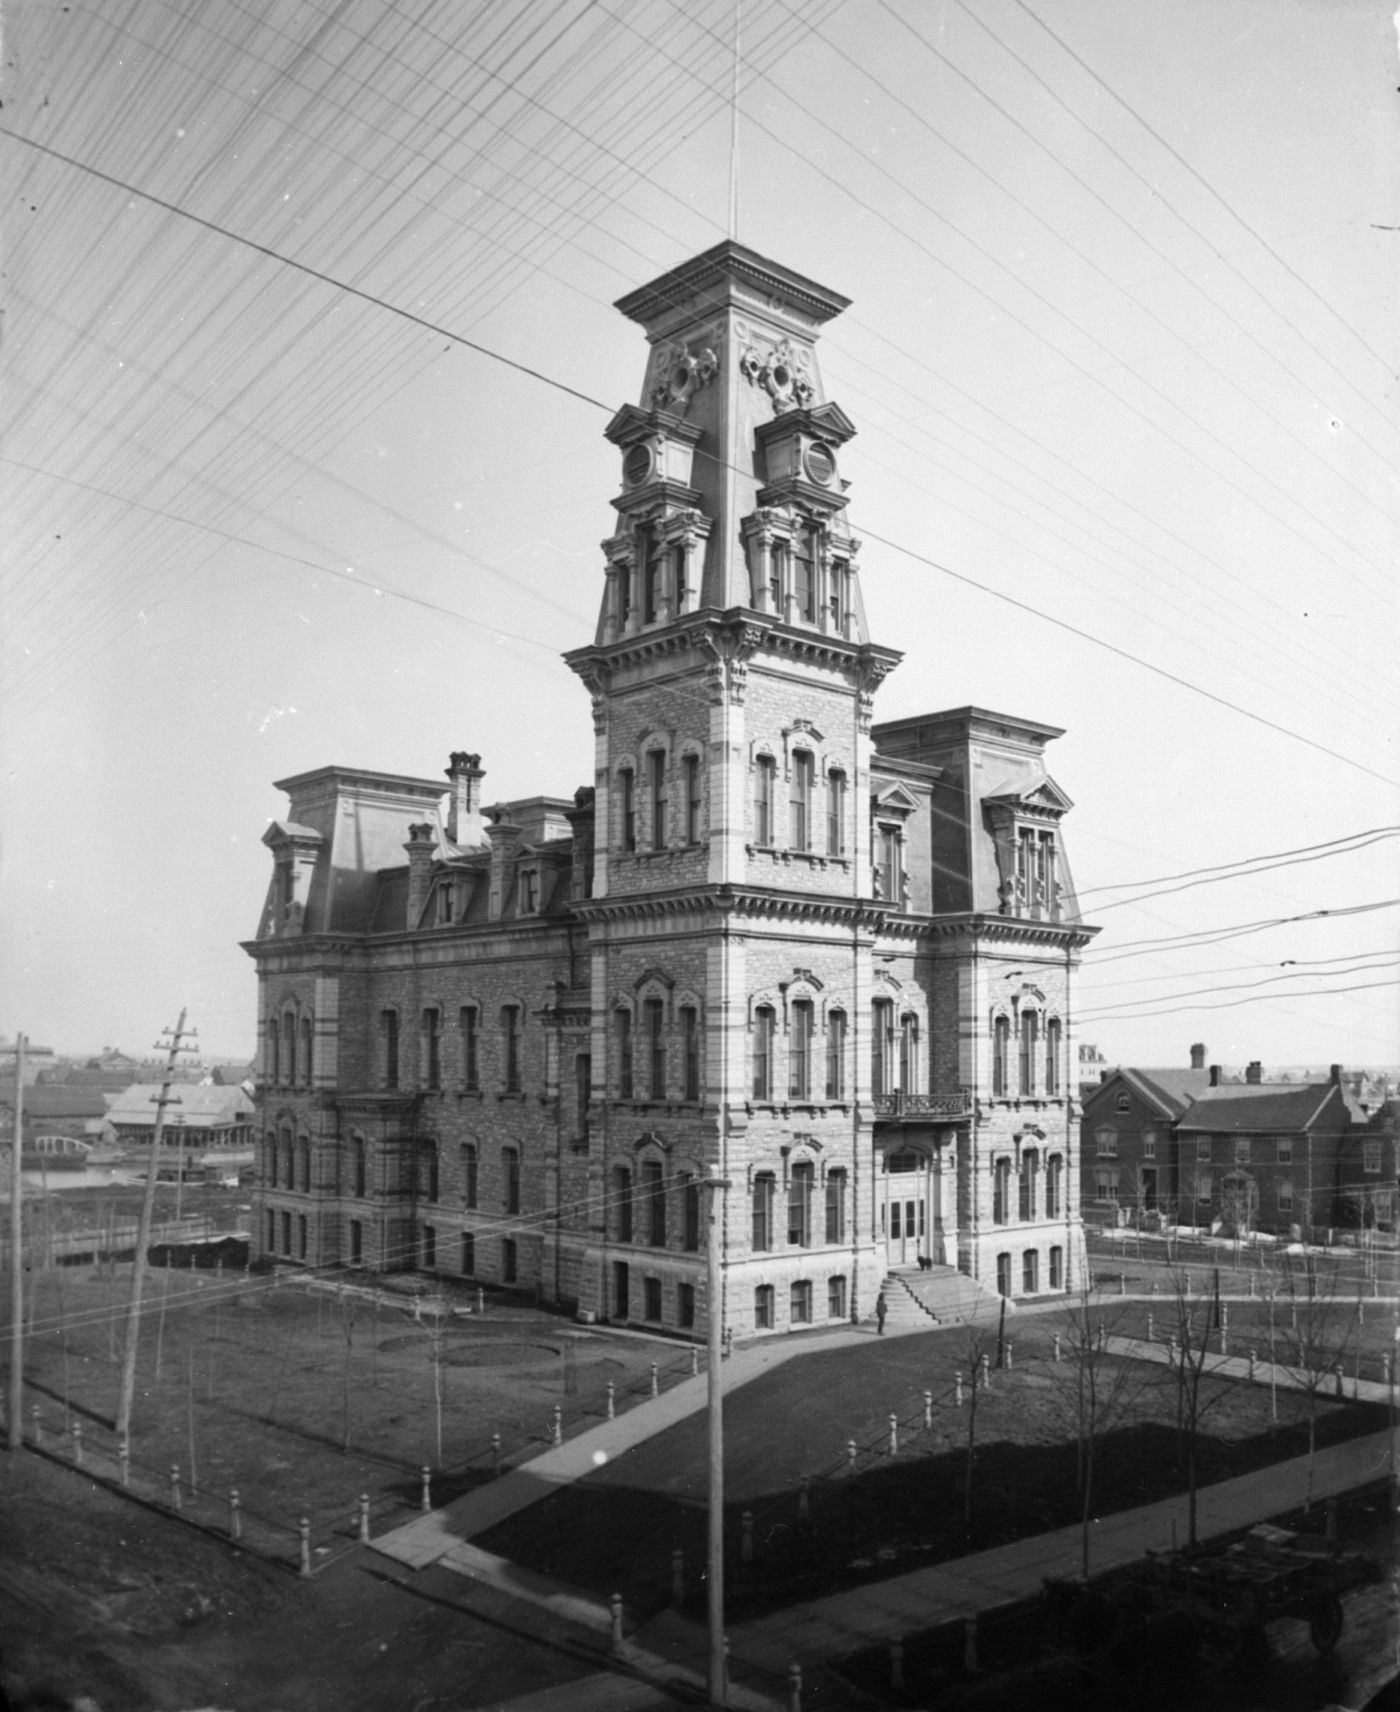 Photographie en noir et blanc d’un édifice en pierre à quatre étages, dominé par une tour à sa droite. L’édifice est séparé des maisons avoisinantes par un parc. Des lignes diagonales sont visibles en haut de l’image.